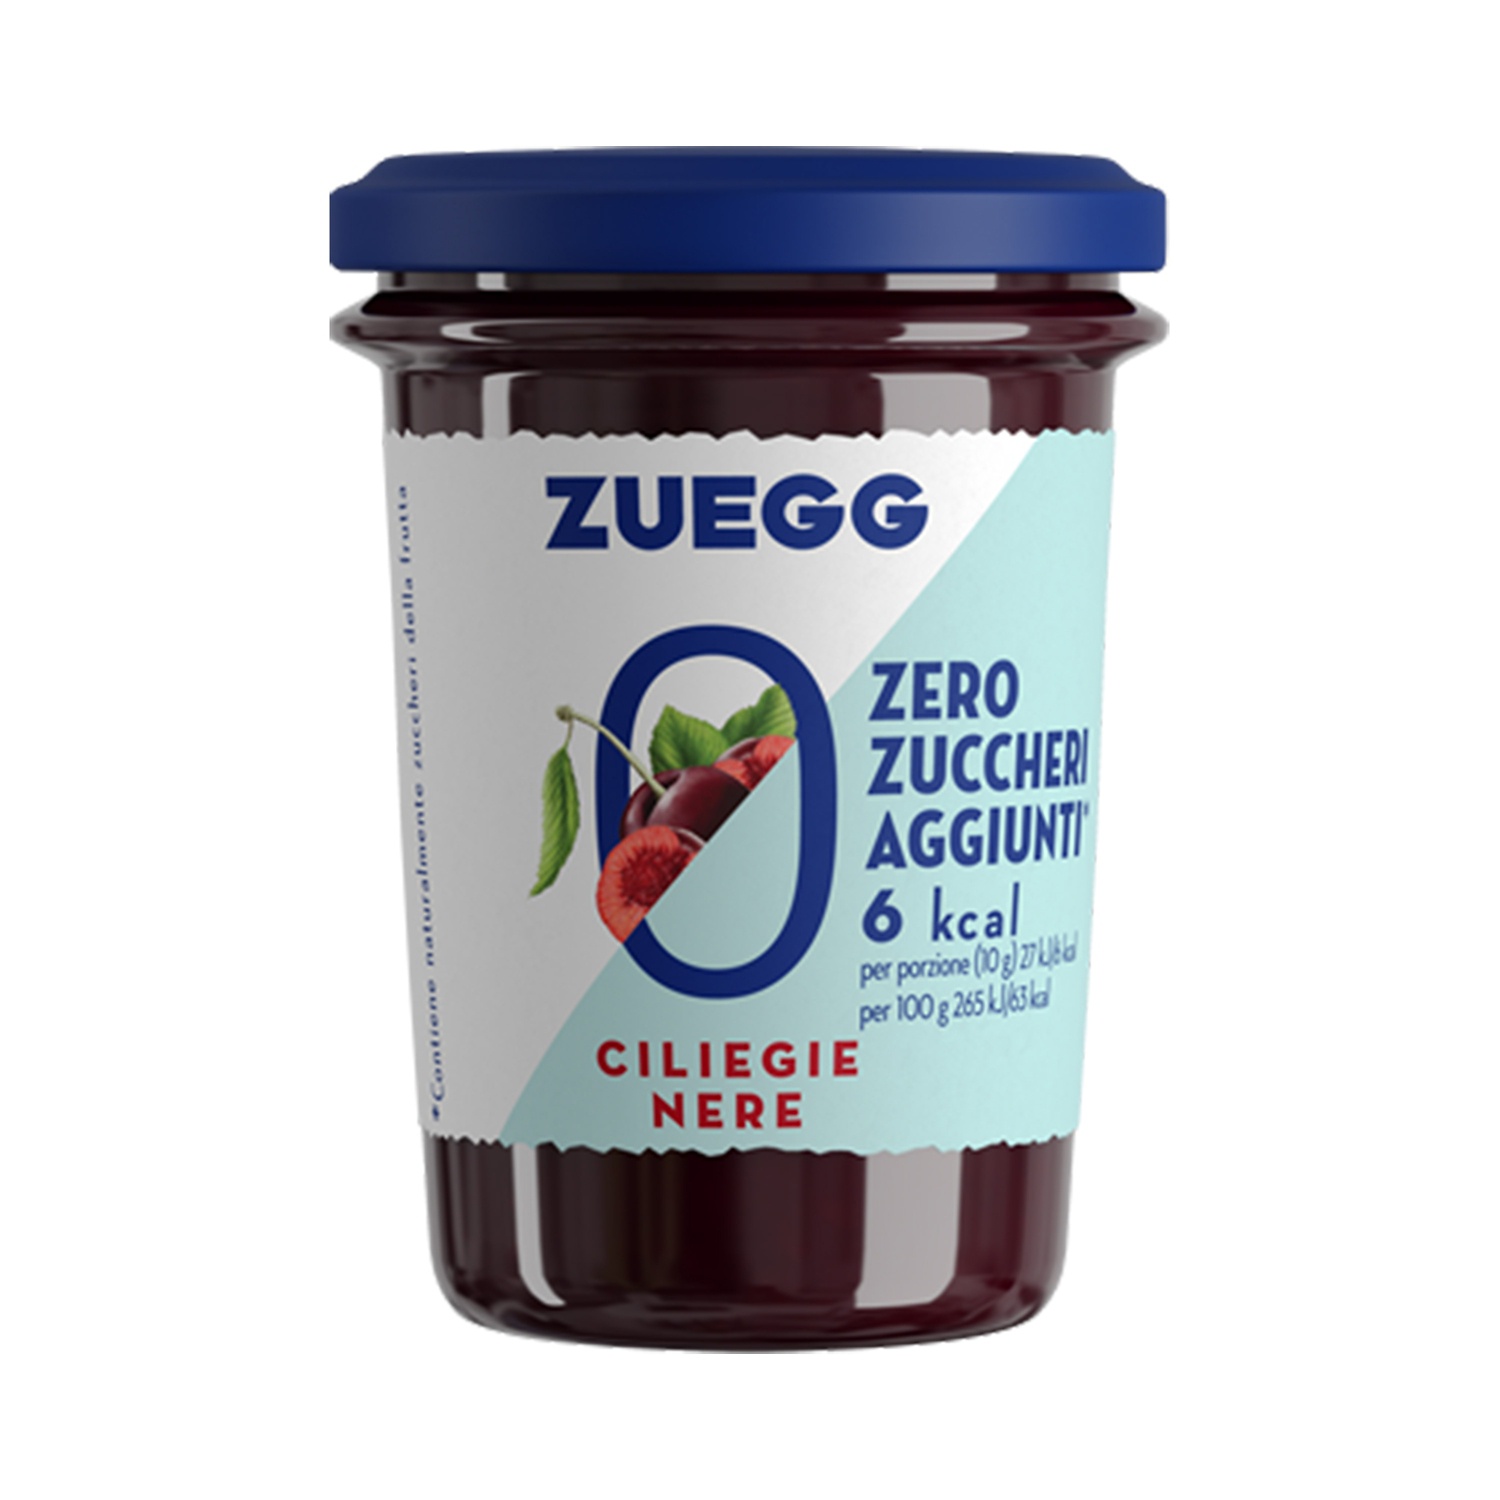 ZUEGG Confettura Zero Zuccheri aggiunti alle ciliegie nere